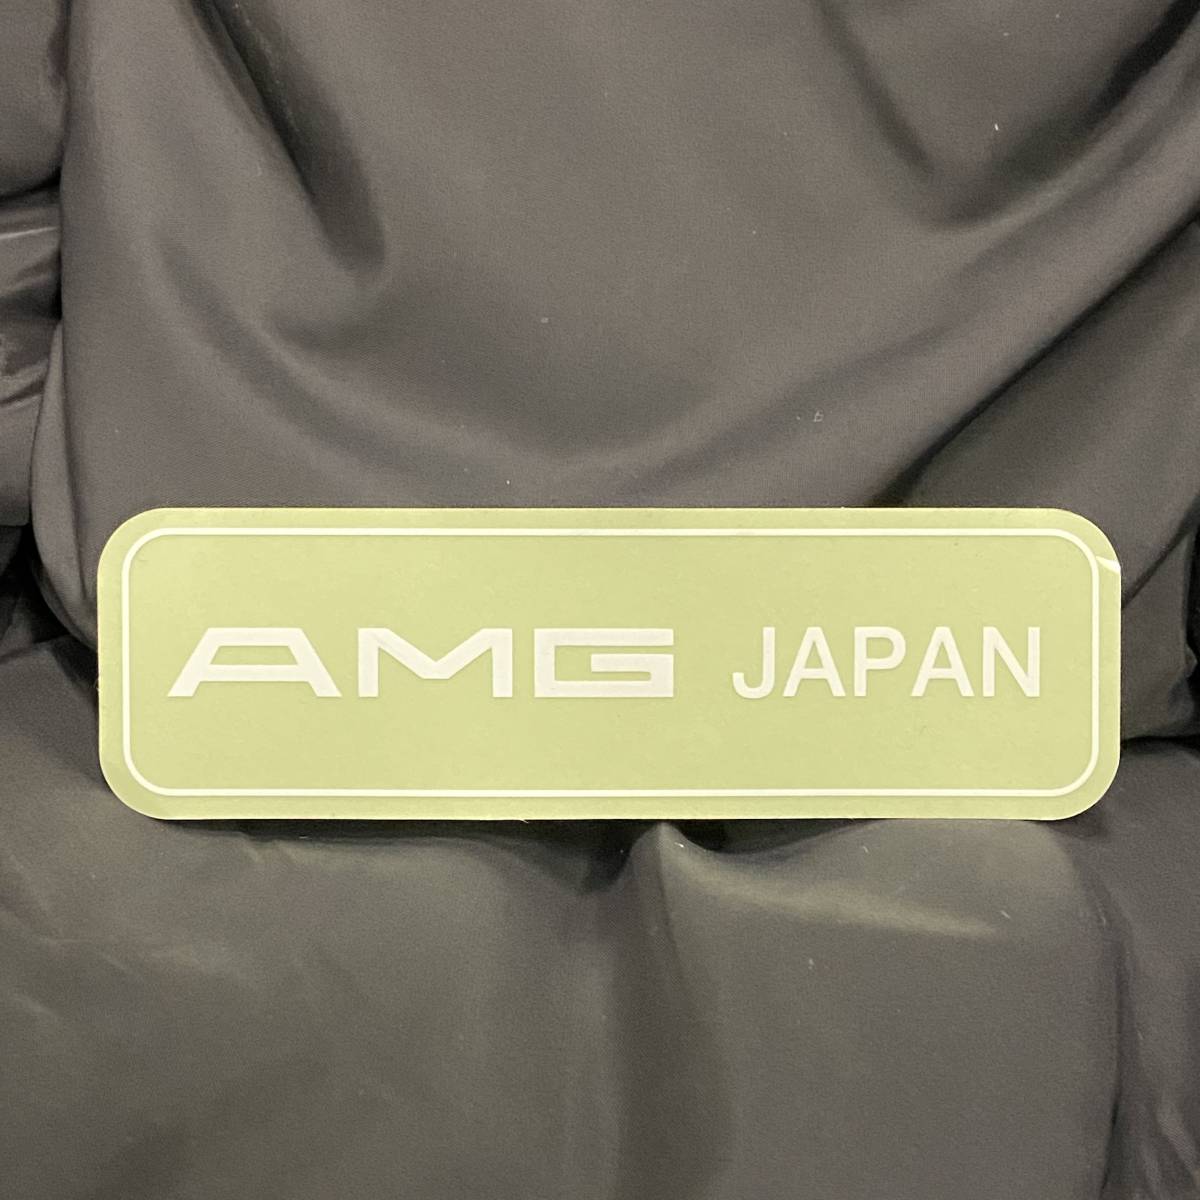 【AMG JAPAN】ロゴ AMG コンプリート ディーラー車 タイプ 表貼り ステッカー デカール ※白文字 W124 W126 W201 R129 W140の画像1